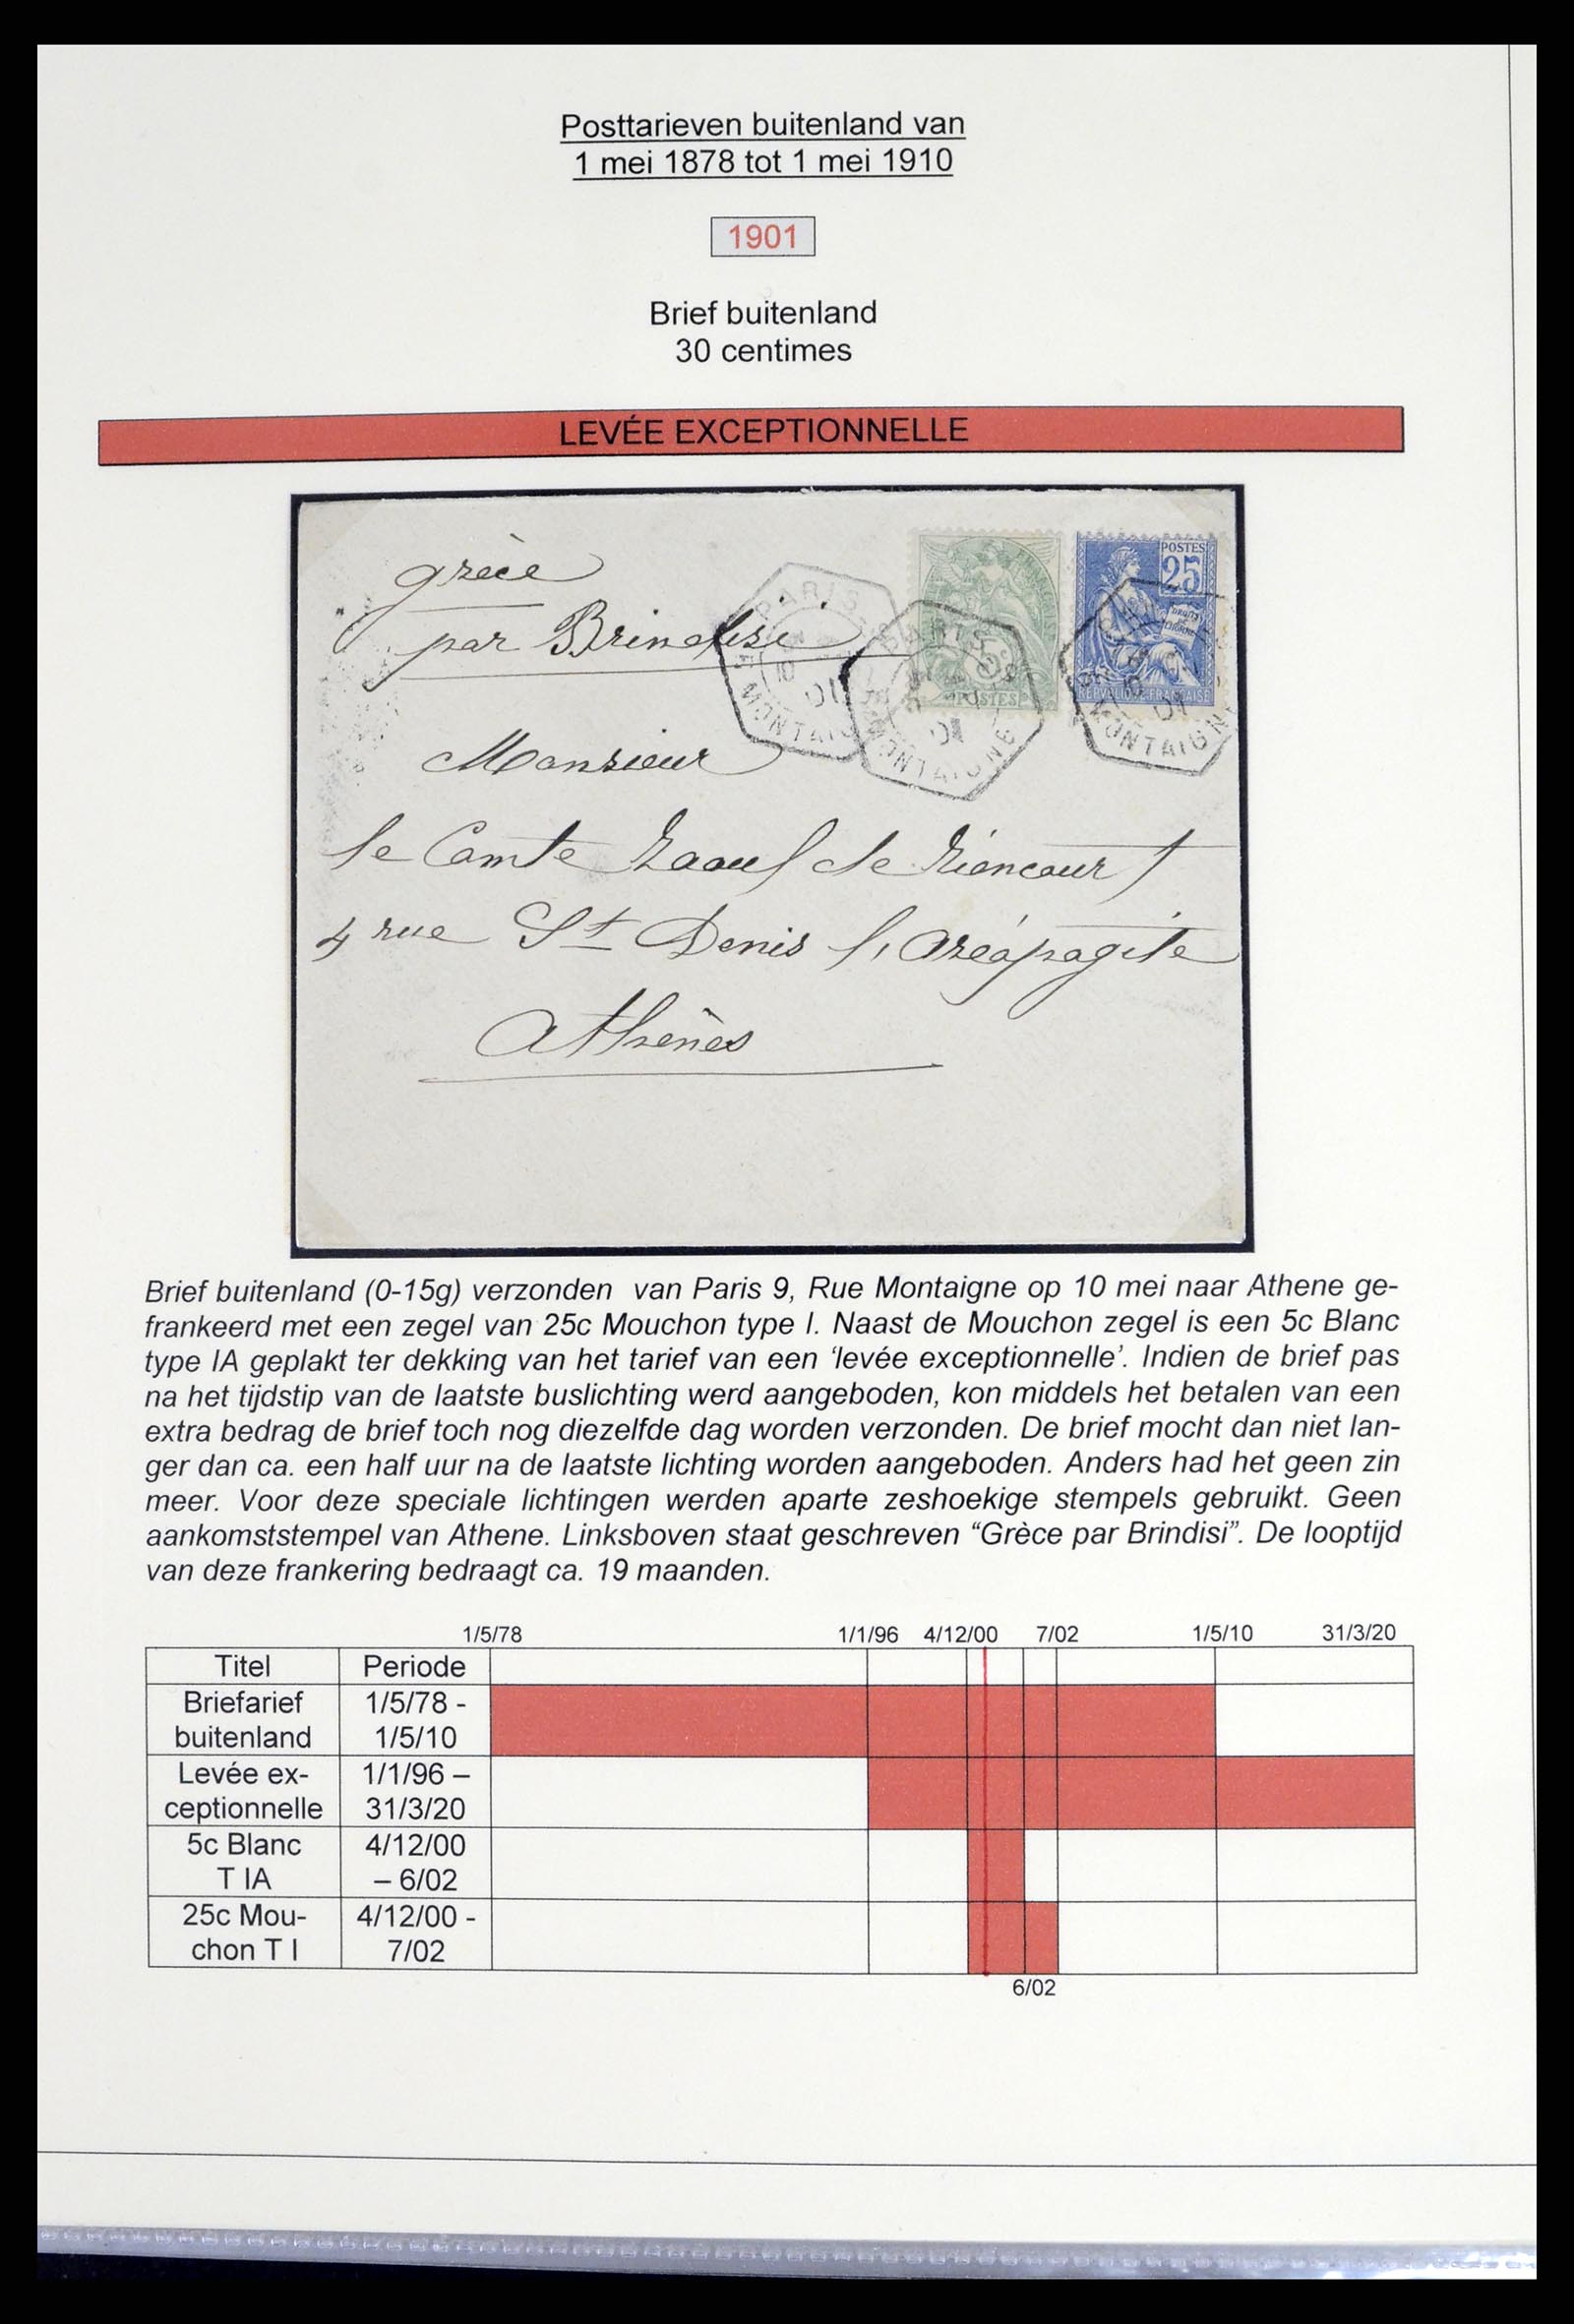 37492 040 - Postzegelverzameling 37492 Frankrijk back of the book en poststukken 